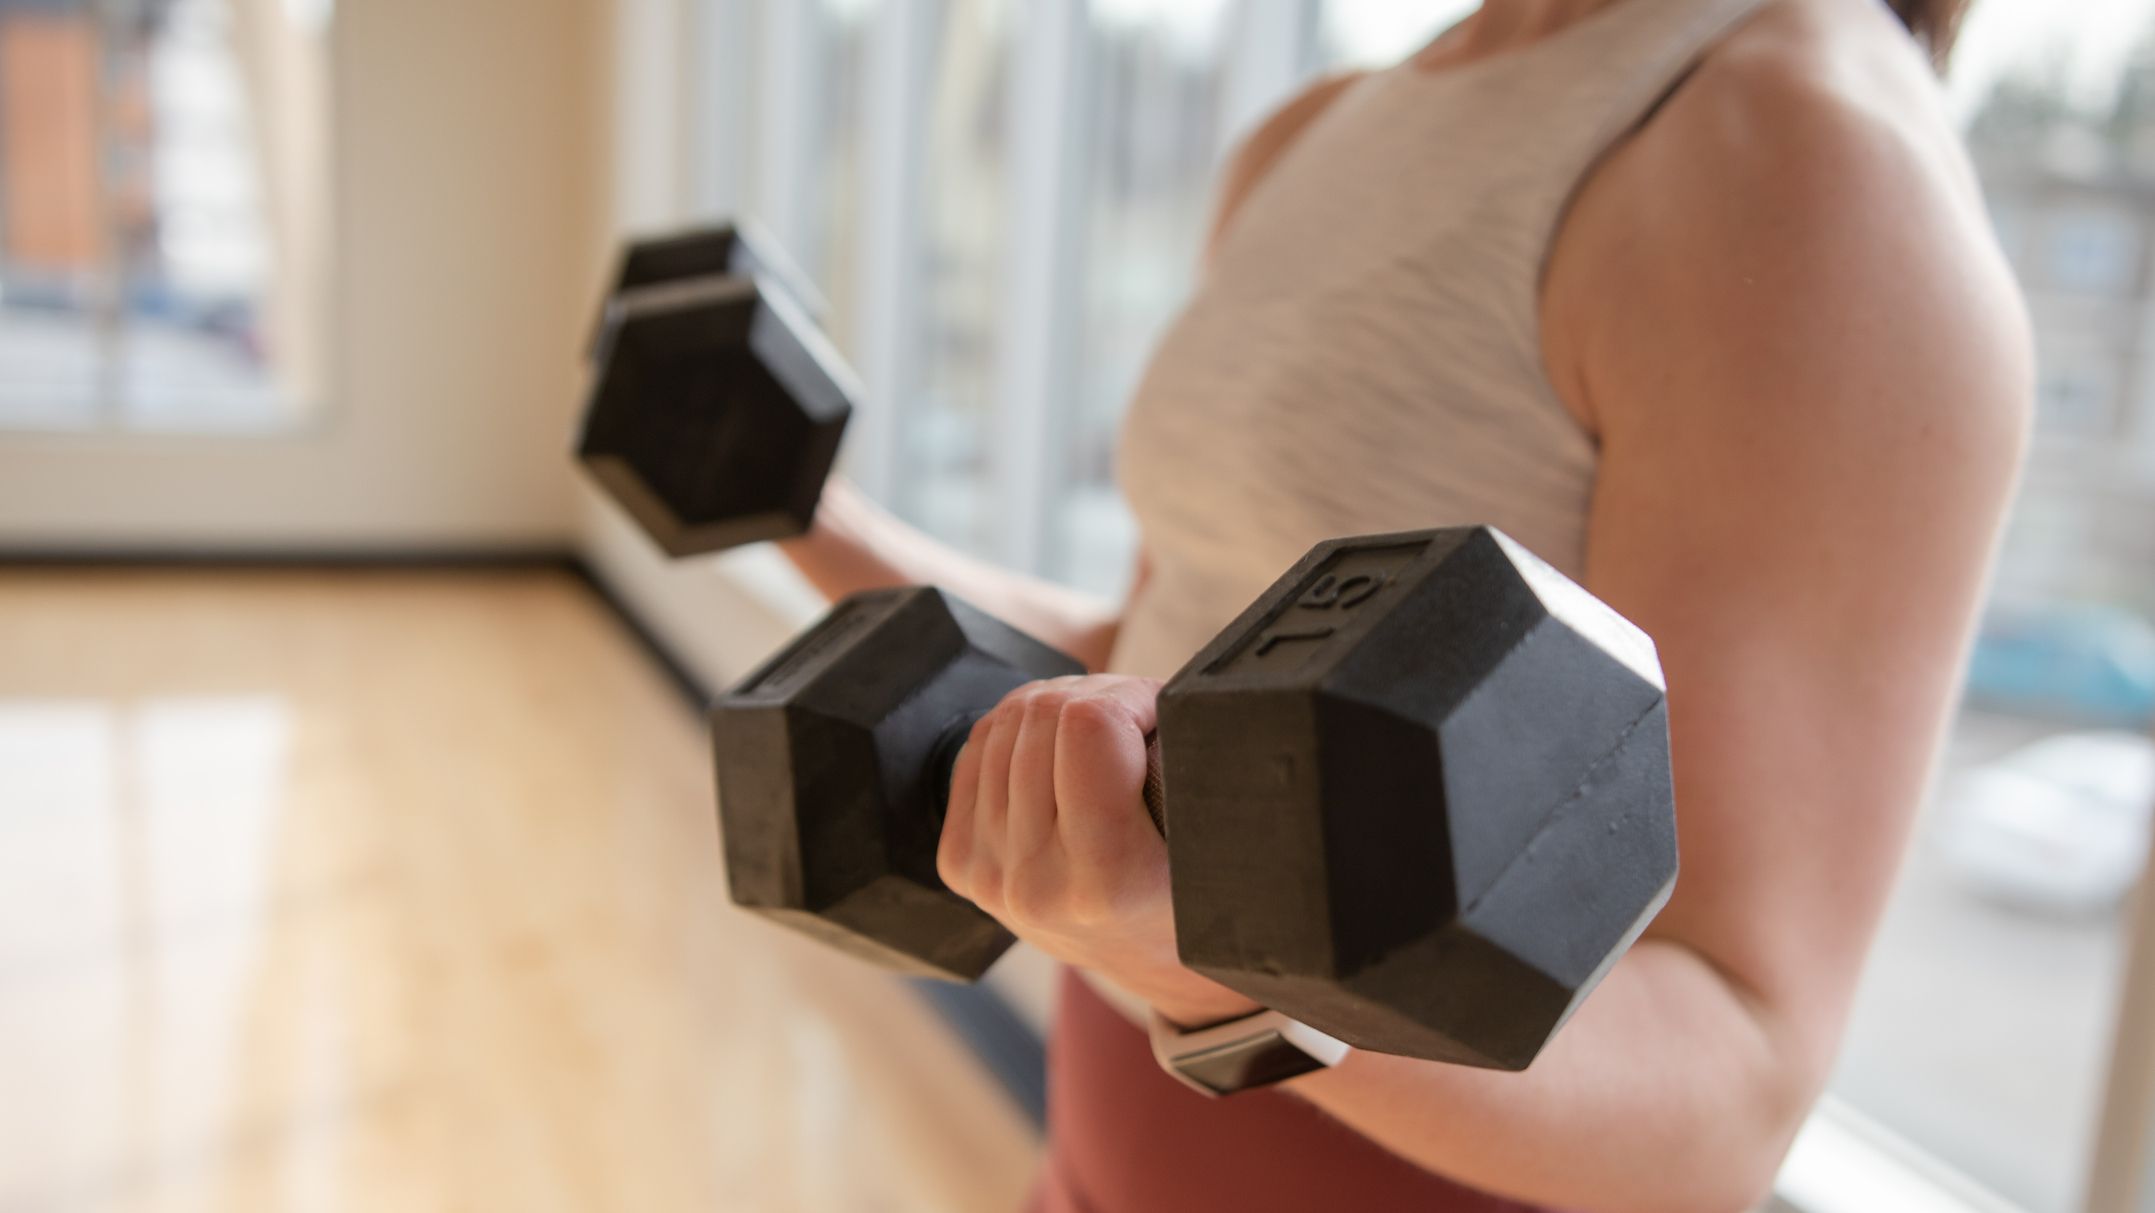 Una entrenadora revela qué ejercicio es mejor para perder peso en mujeres:  ¿cardio o fuerza?